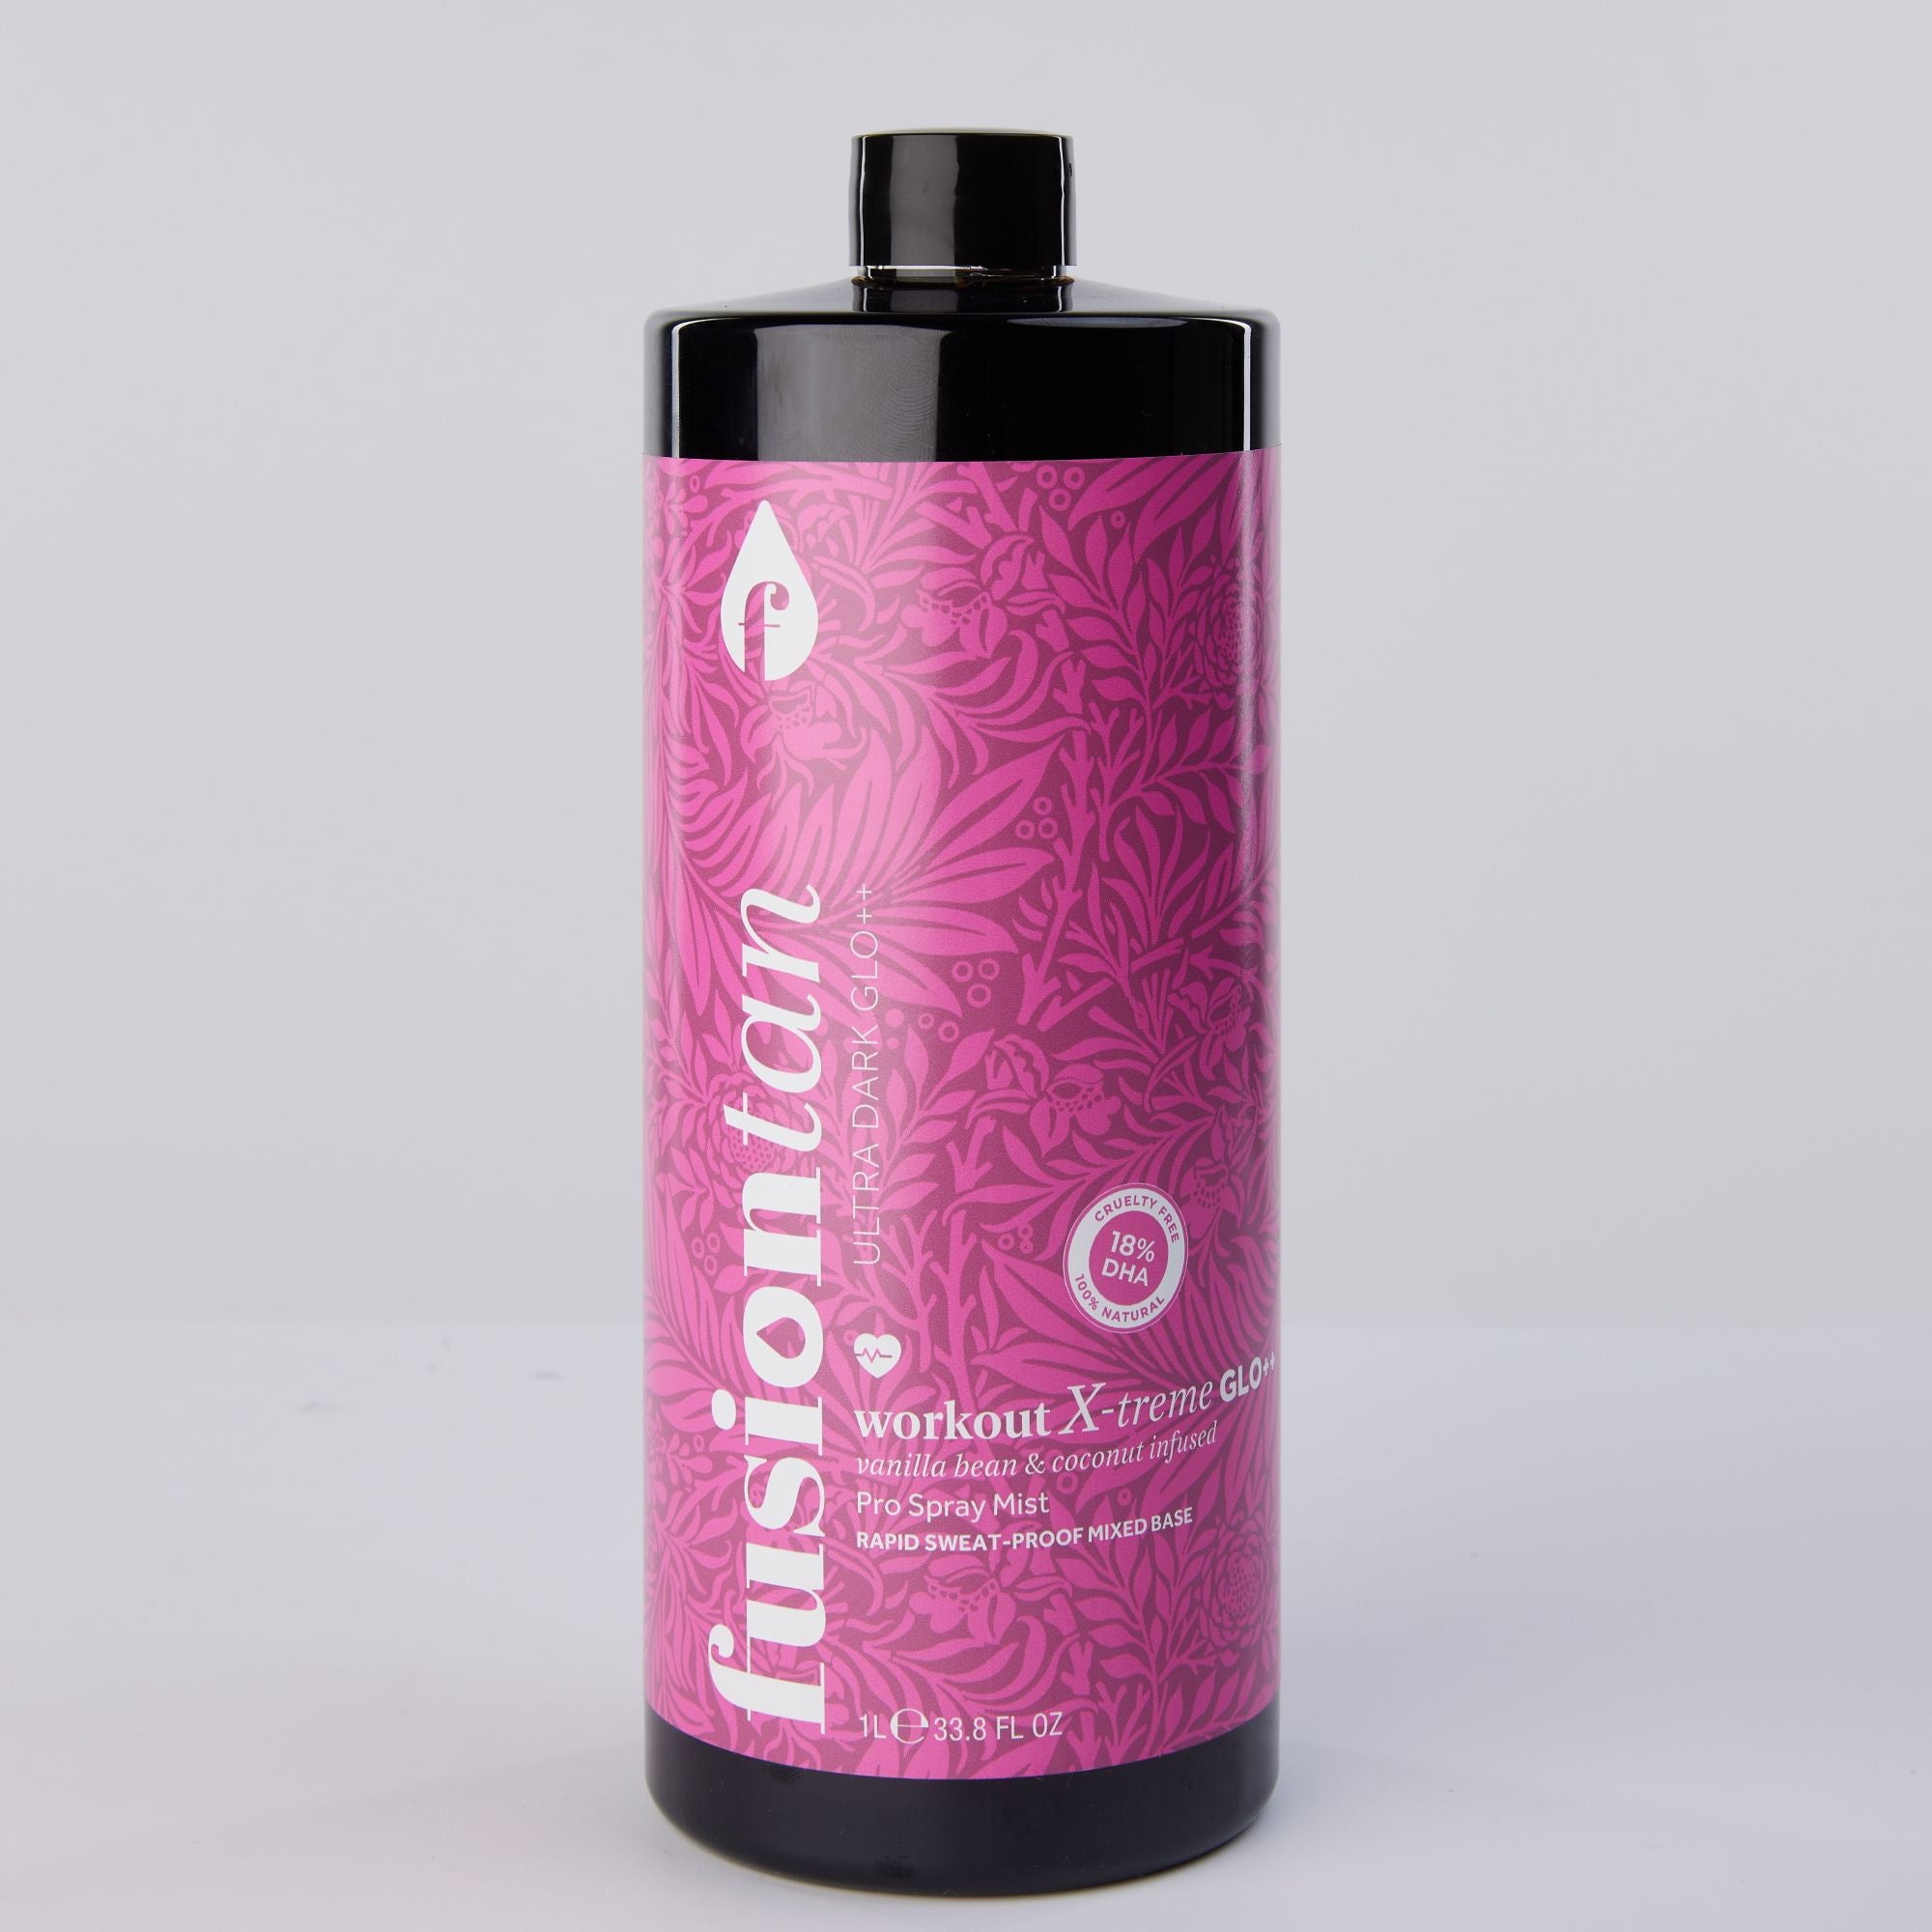 Fusion Tan - Pro Spray Tan Mist Workout X-treme 18% (Multi) 1 Litre